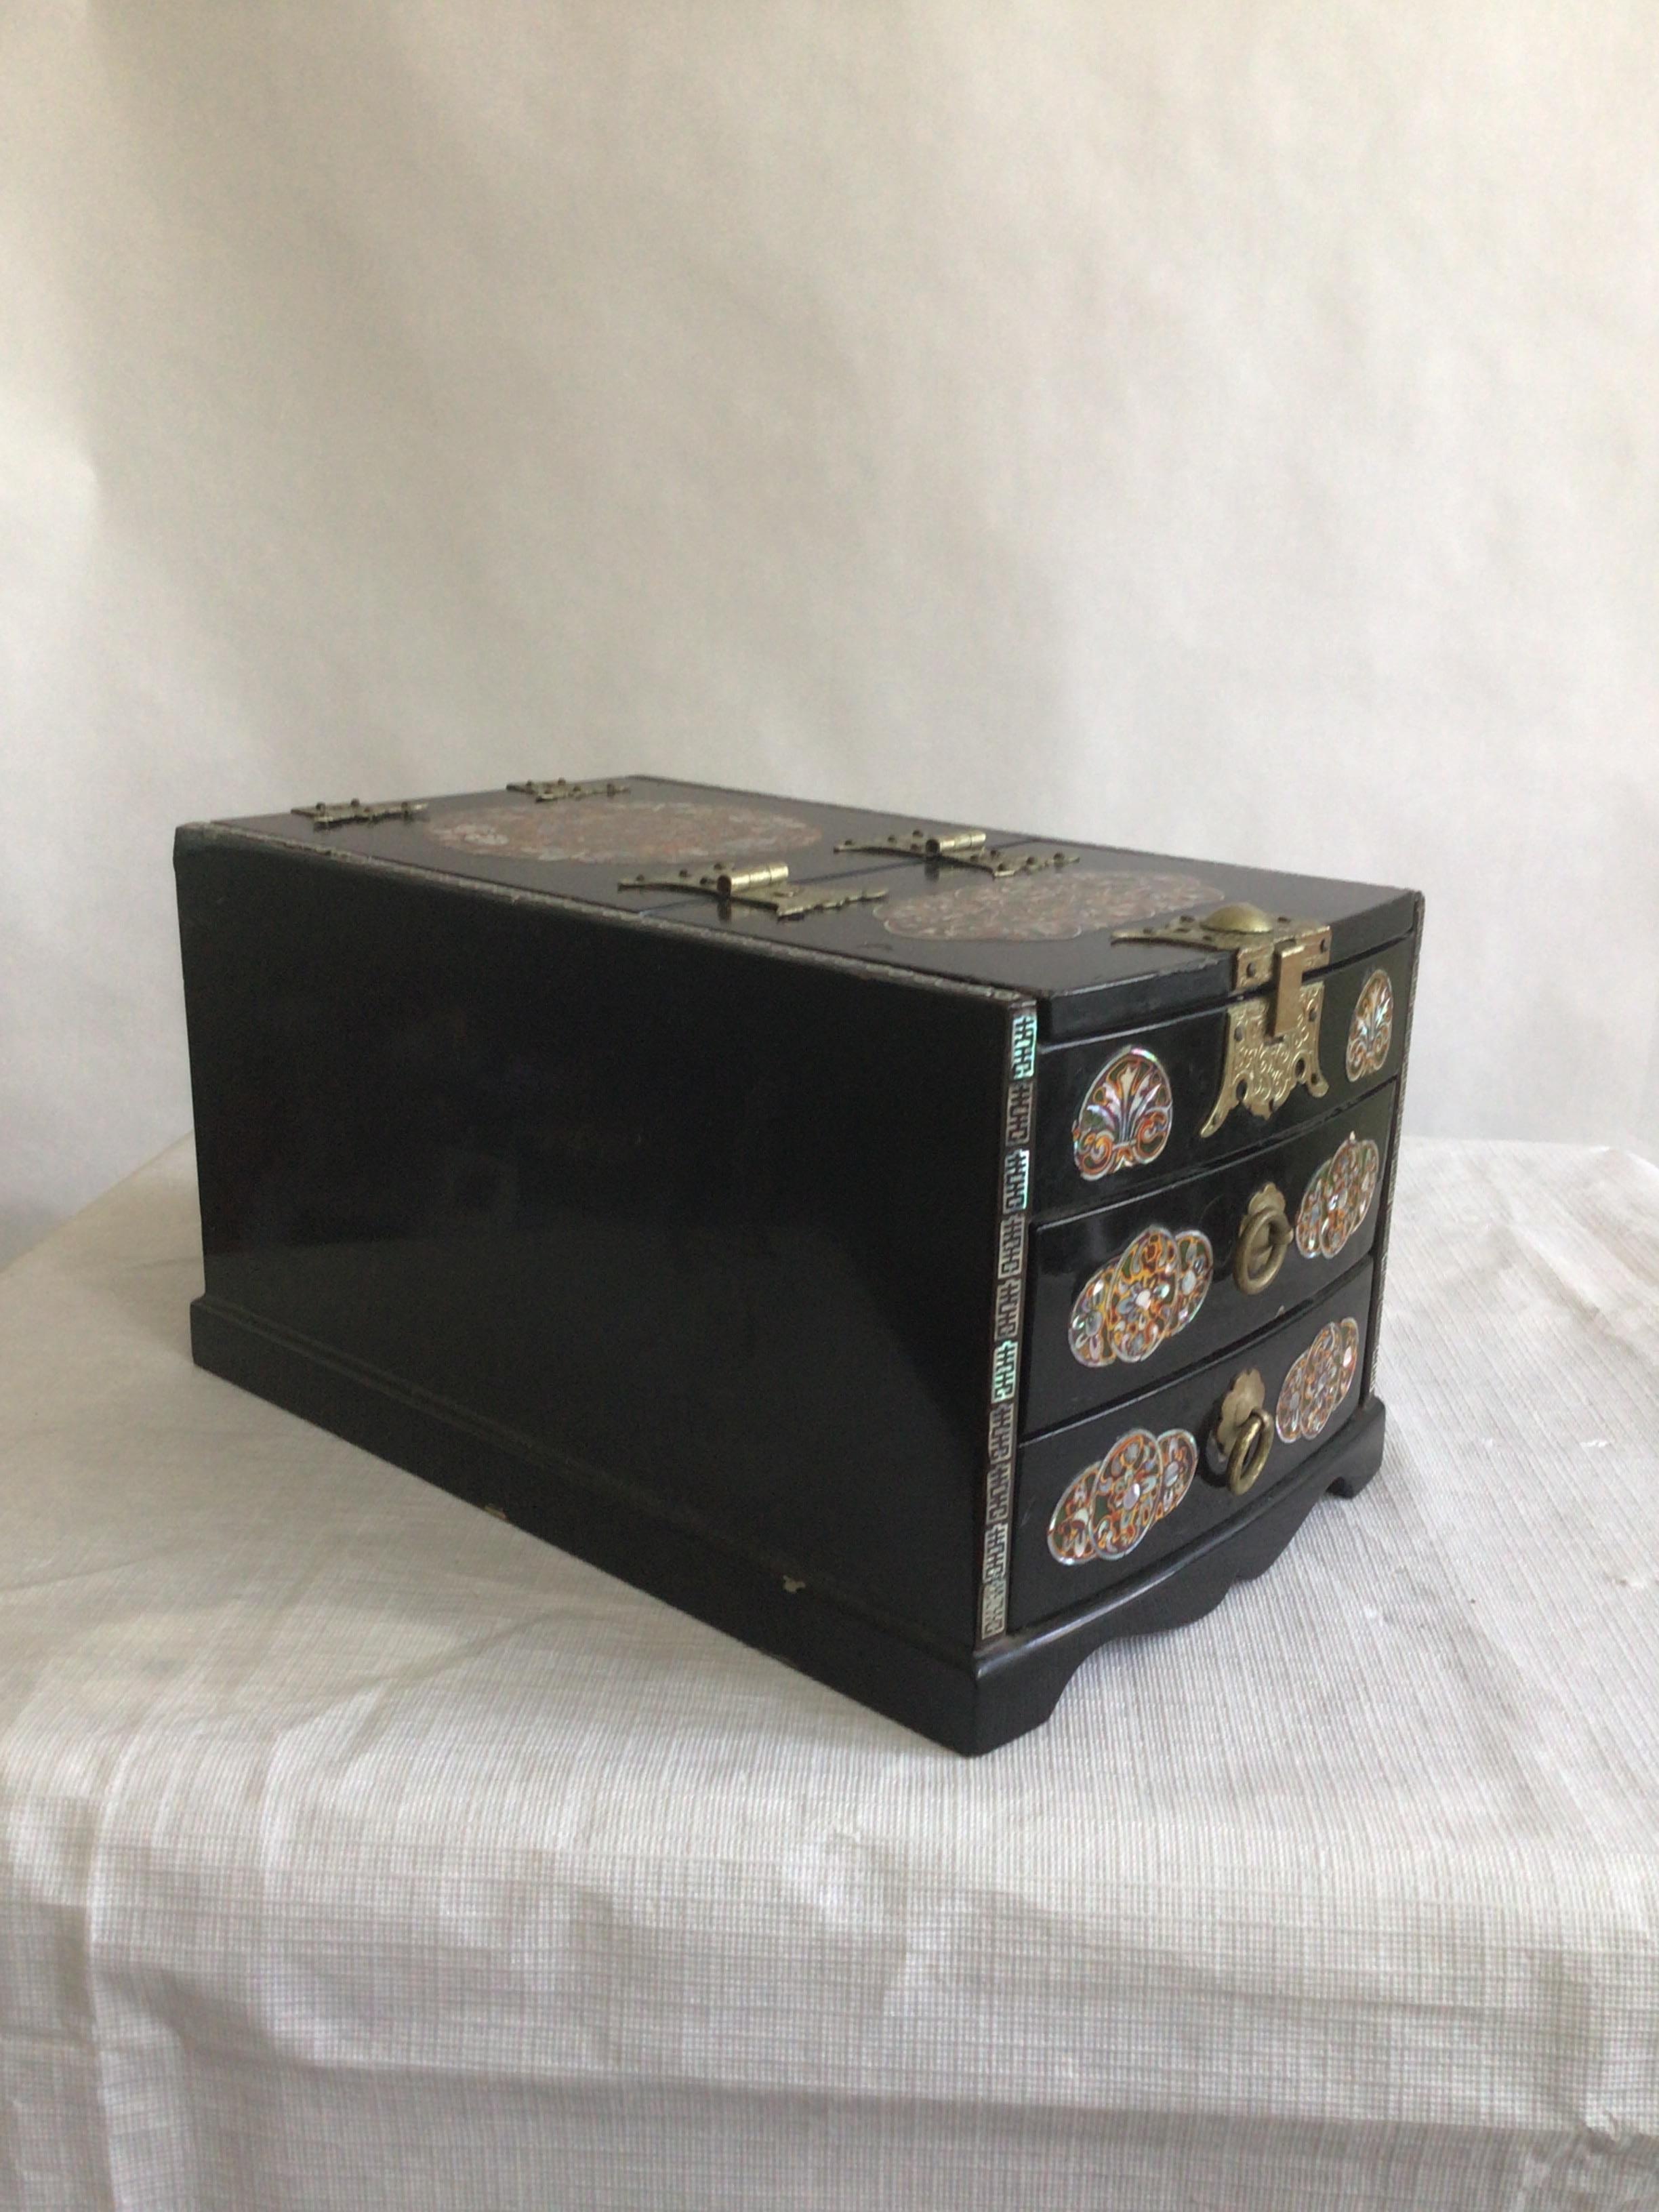 Petite boîte à pansements des années 1950 en bois laqué noir et incrustations de nacre
Deux tiroirs doublés de feutre
Miroir sur le dessous du couvercle
Petite piqûre sur le dessus
